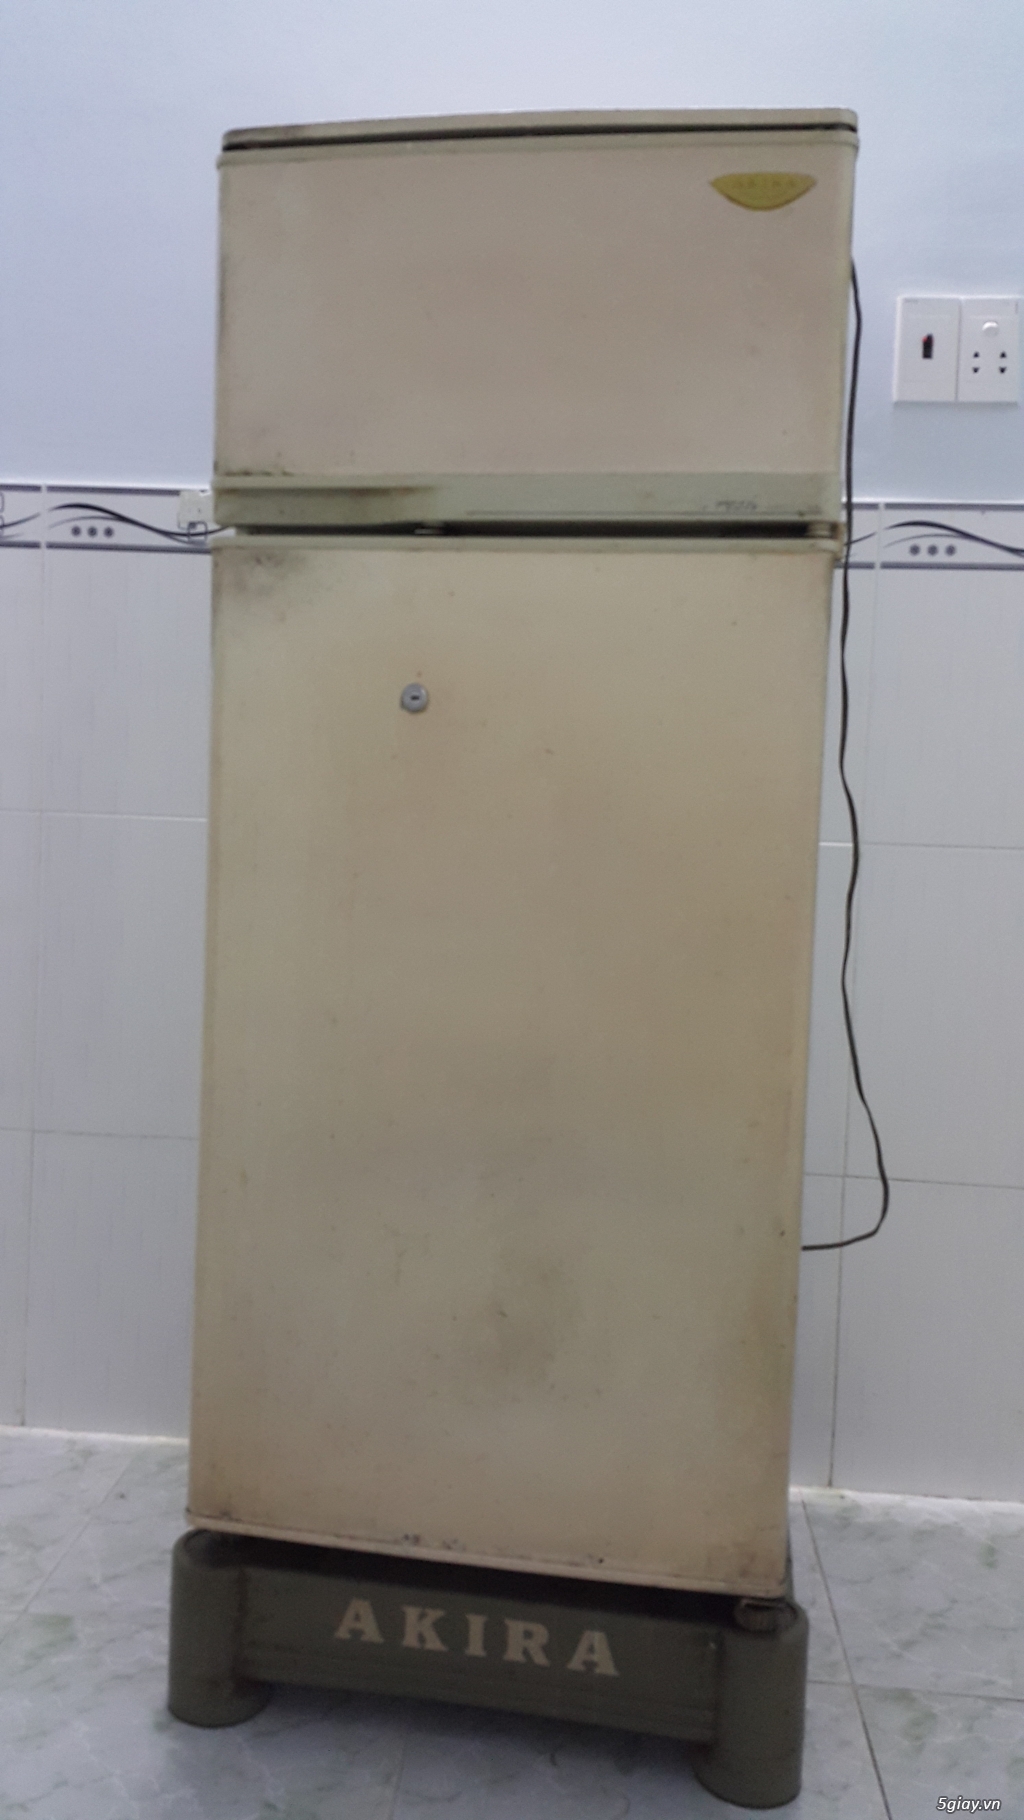 Cần bán Tủ lạnh AKIRA 170L - Hàng NHẬT Zin tiết kiệm điện giá rẻ